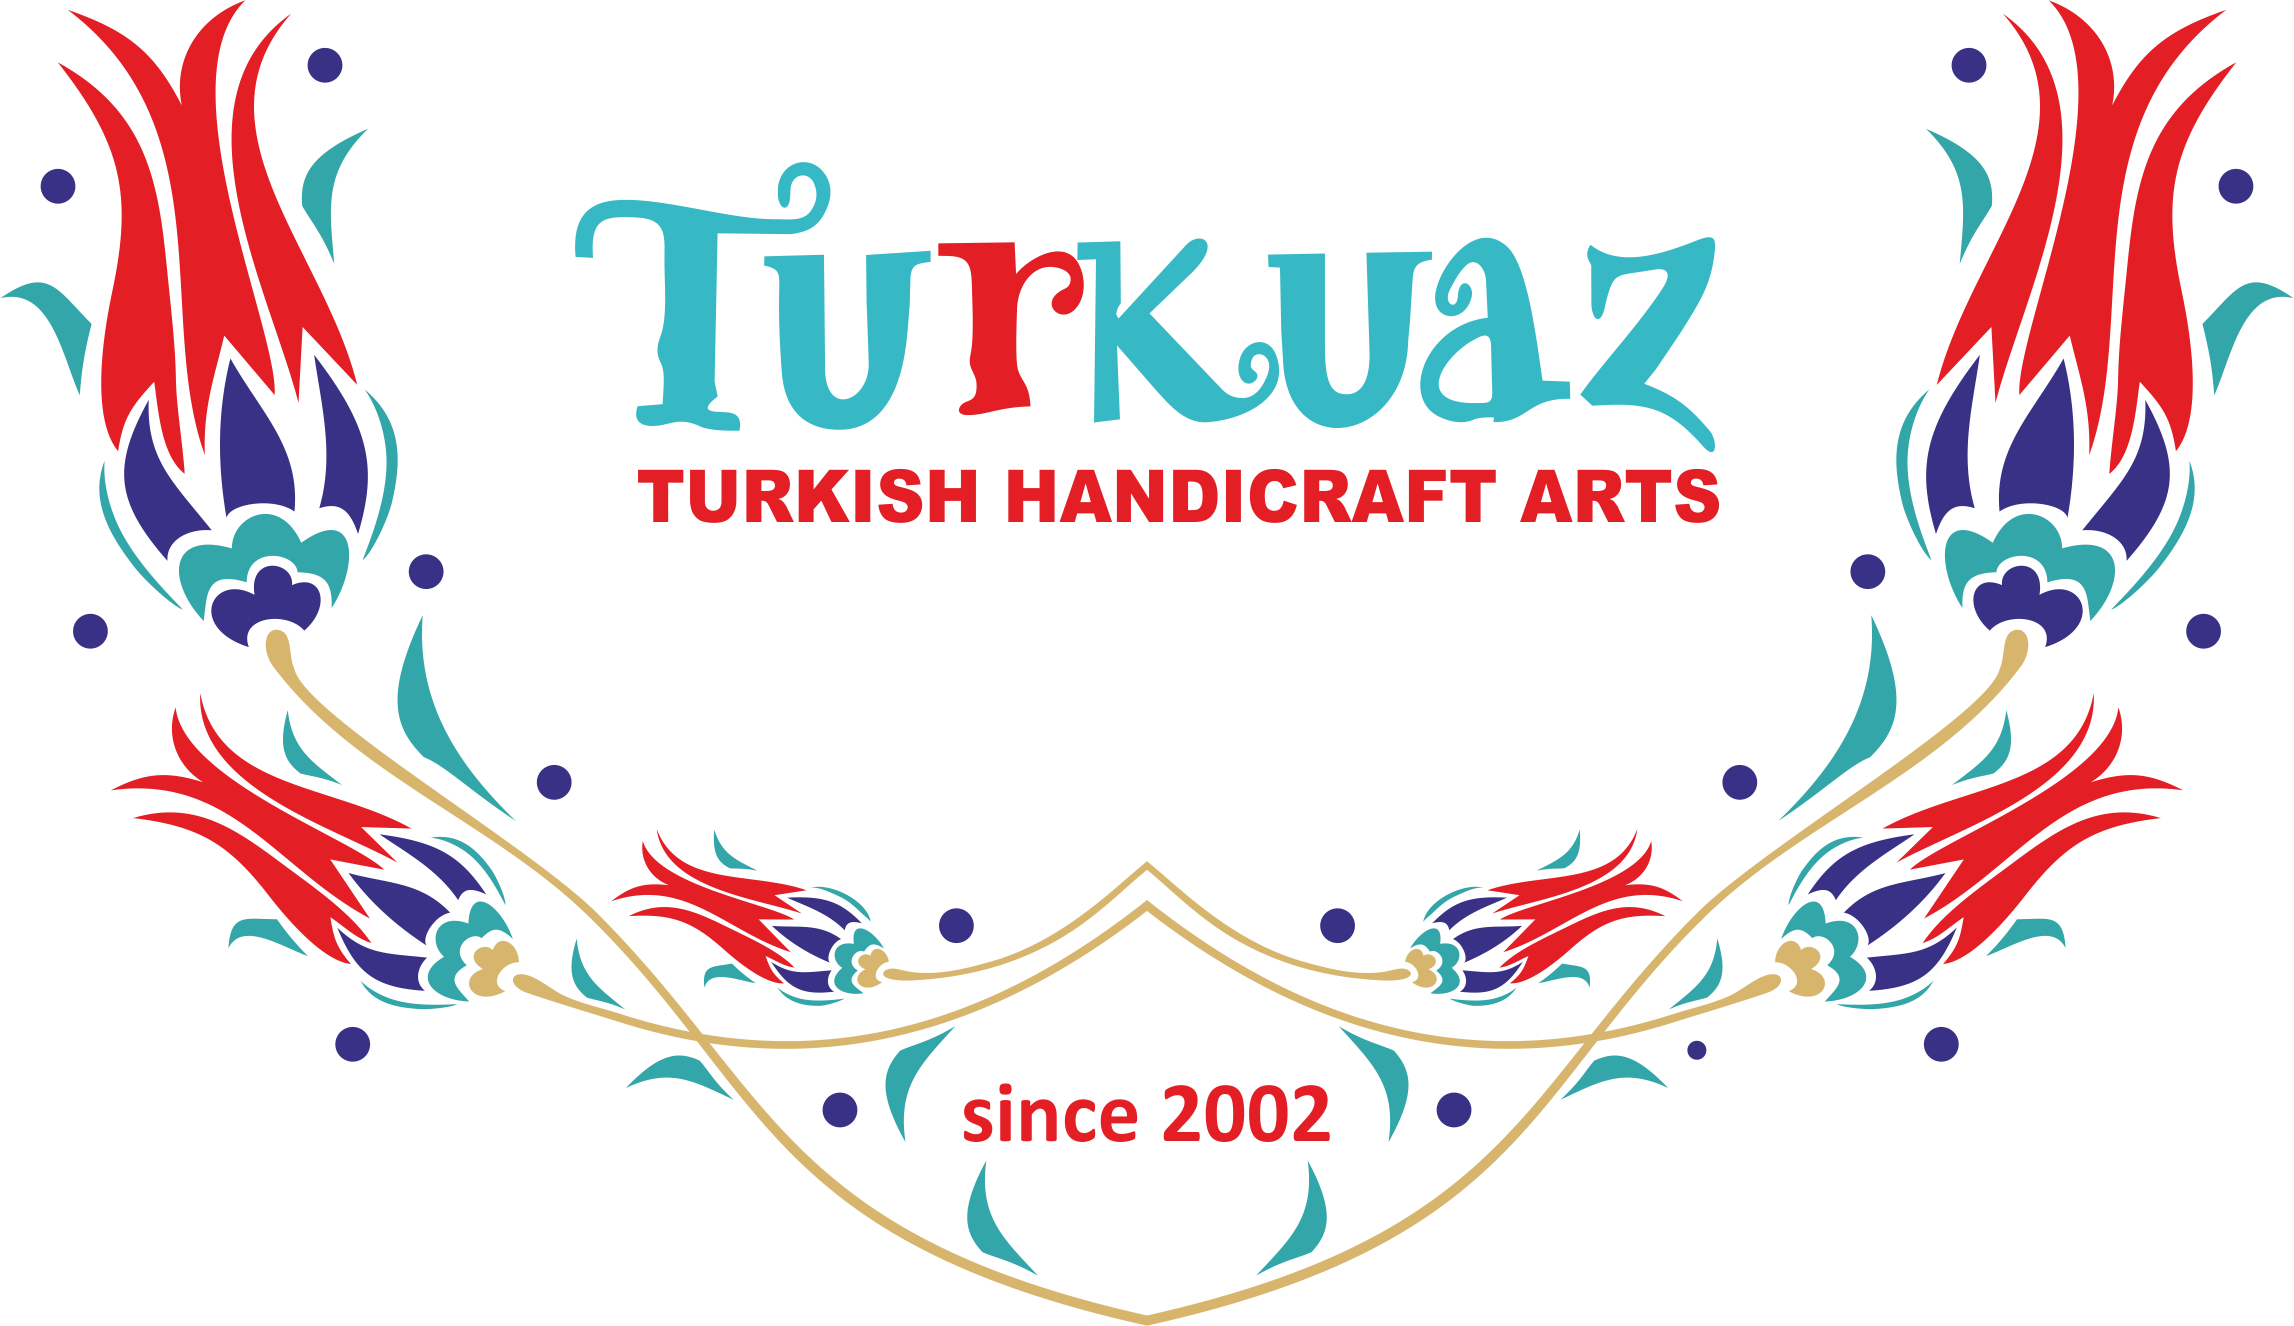 TURKUAZ | Turkish Handicrafts Art,Türk El Sanatları Merkezi, Halit KAYA, Ahşap, Bakır, Hediyelik, Çerçeve, Halı, Kilim, Resim